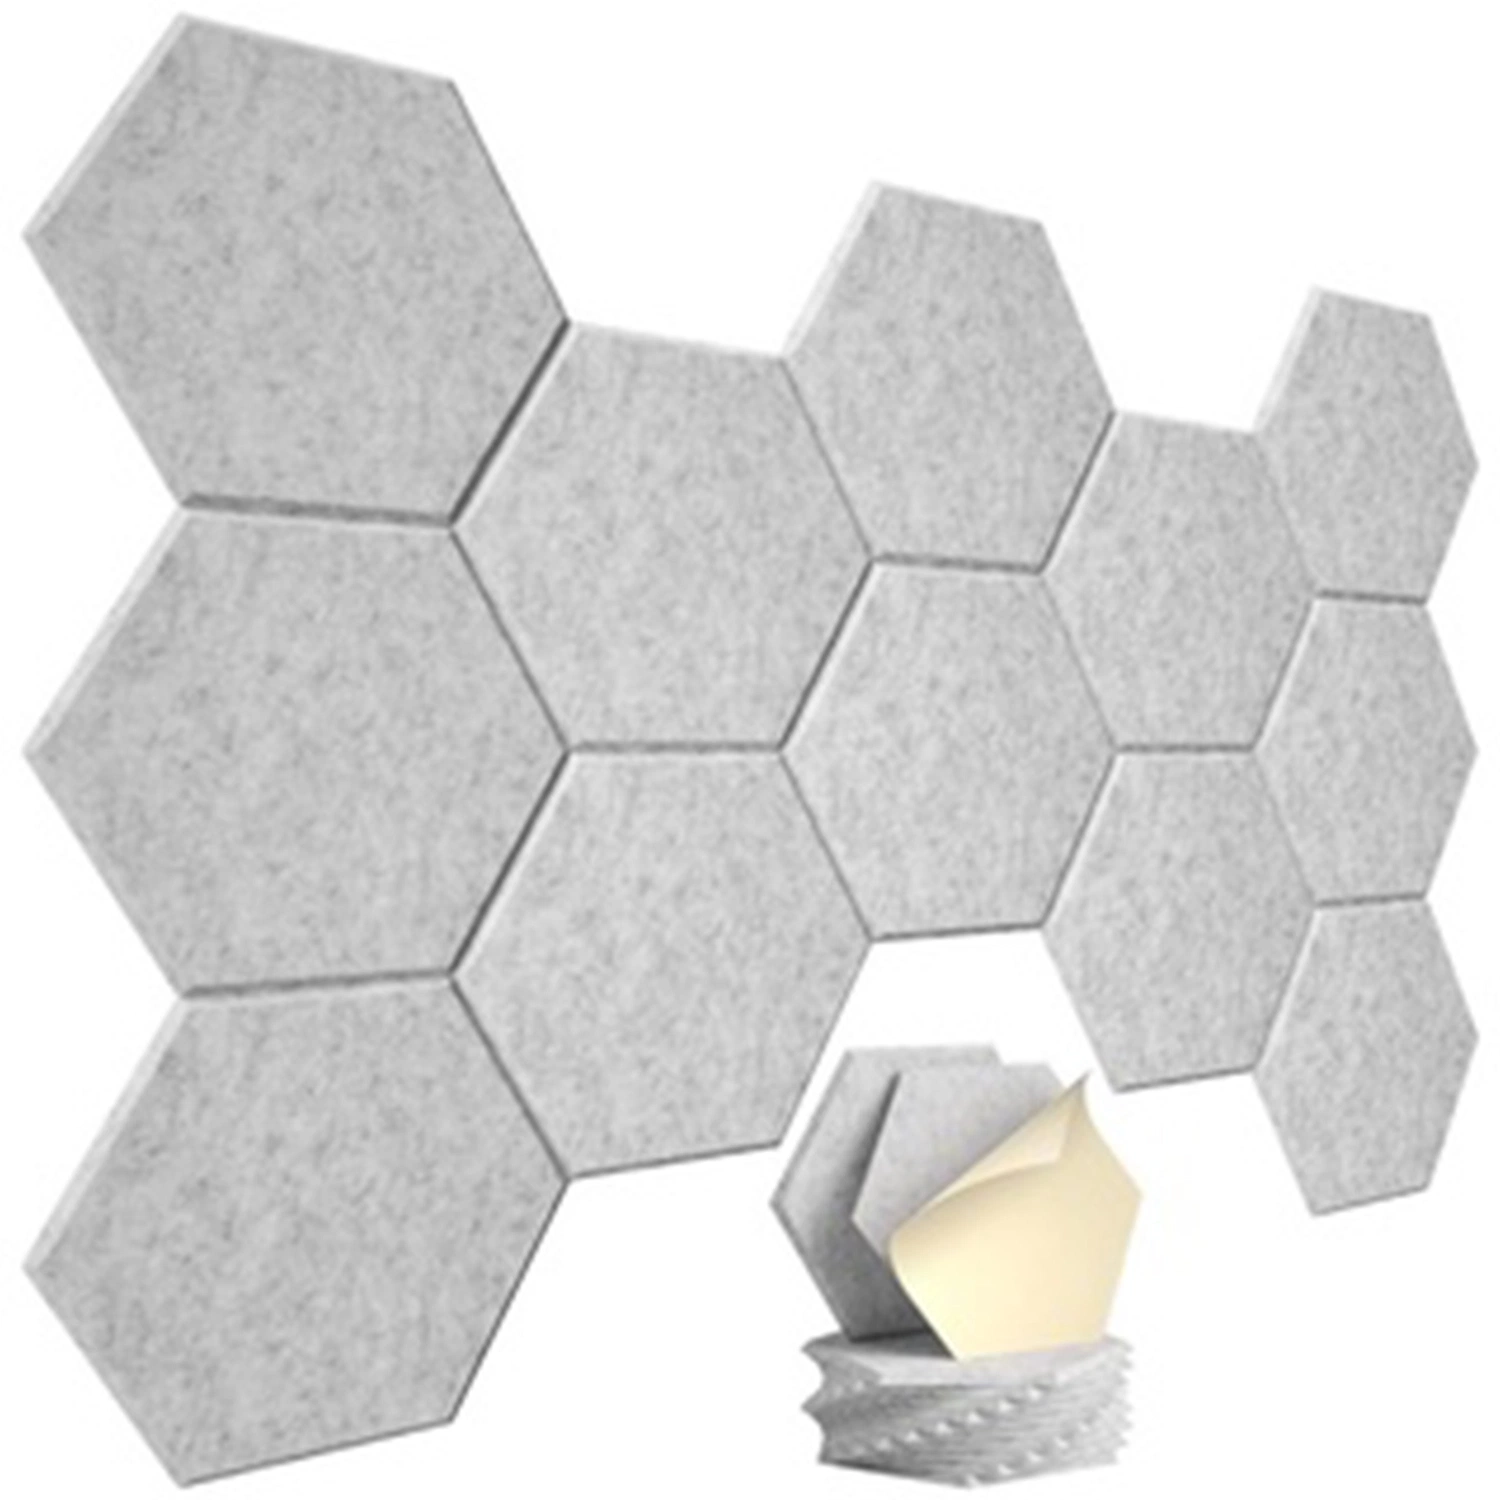 União Econômica Painel Sound-Absorbing Hexagonal do Painel da Parede Sound-Absorbing Sound-Proof decorativa Almofada de parede